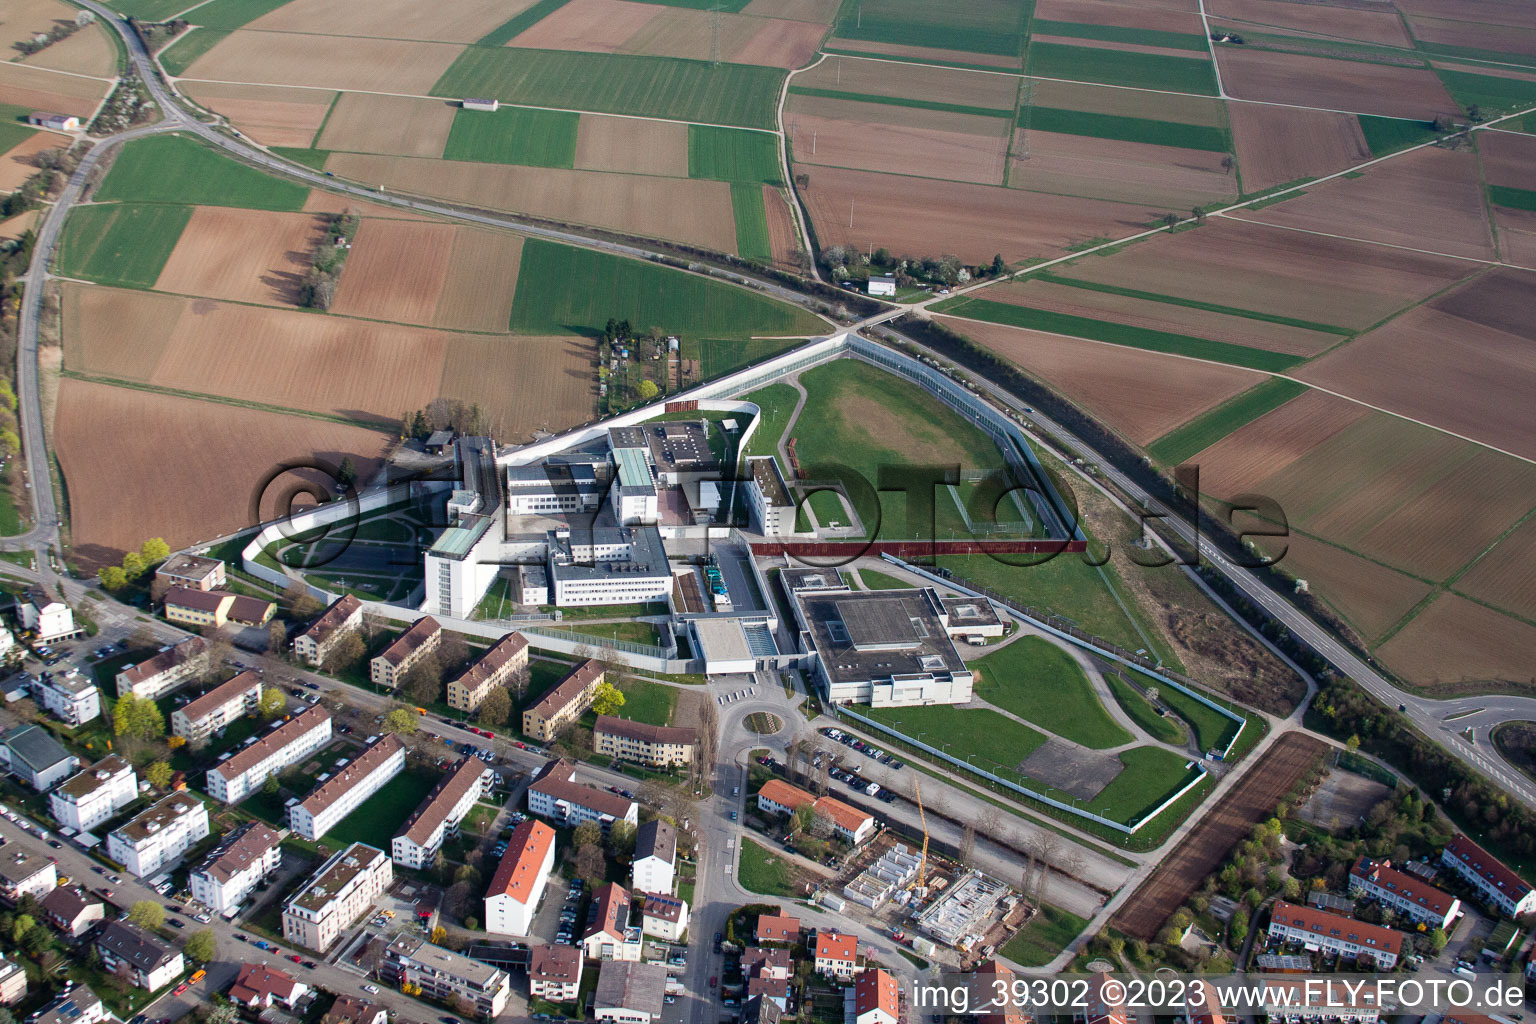 Vue aérienne de Établissement correctionnel Prison de haute sécurité à le quartier Stammheim in Stuttgart dans le département Bade-Wurtemberg, Allemagne